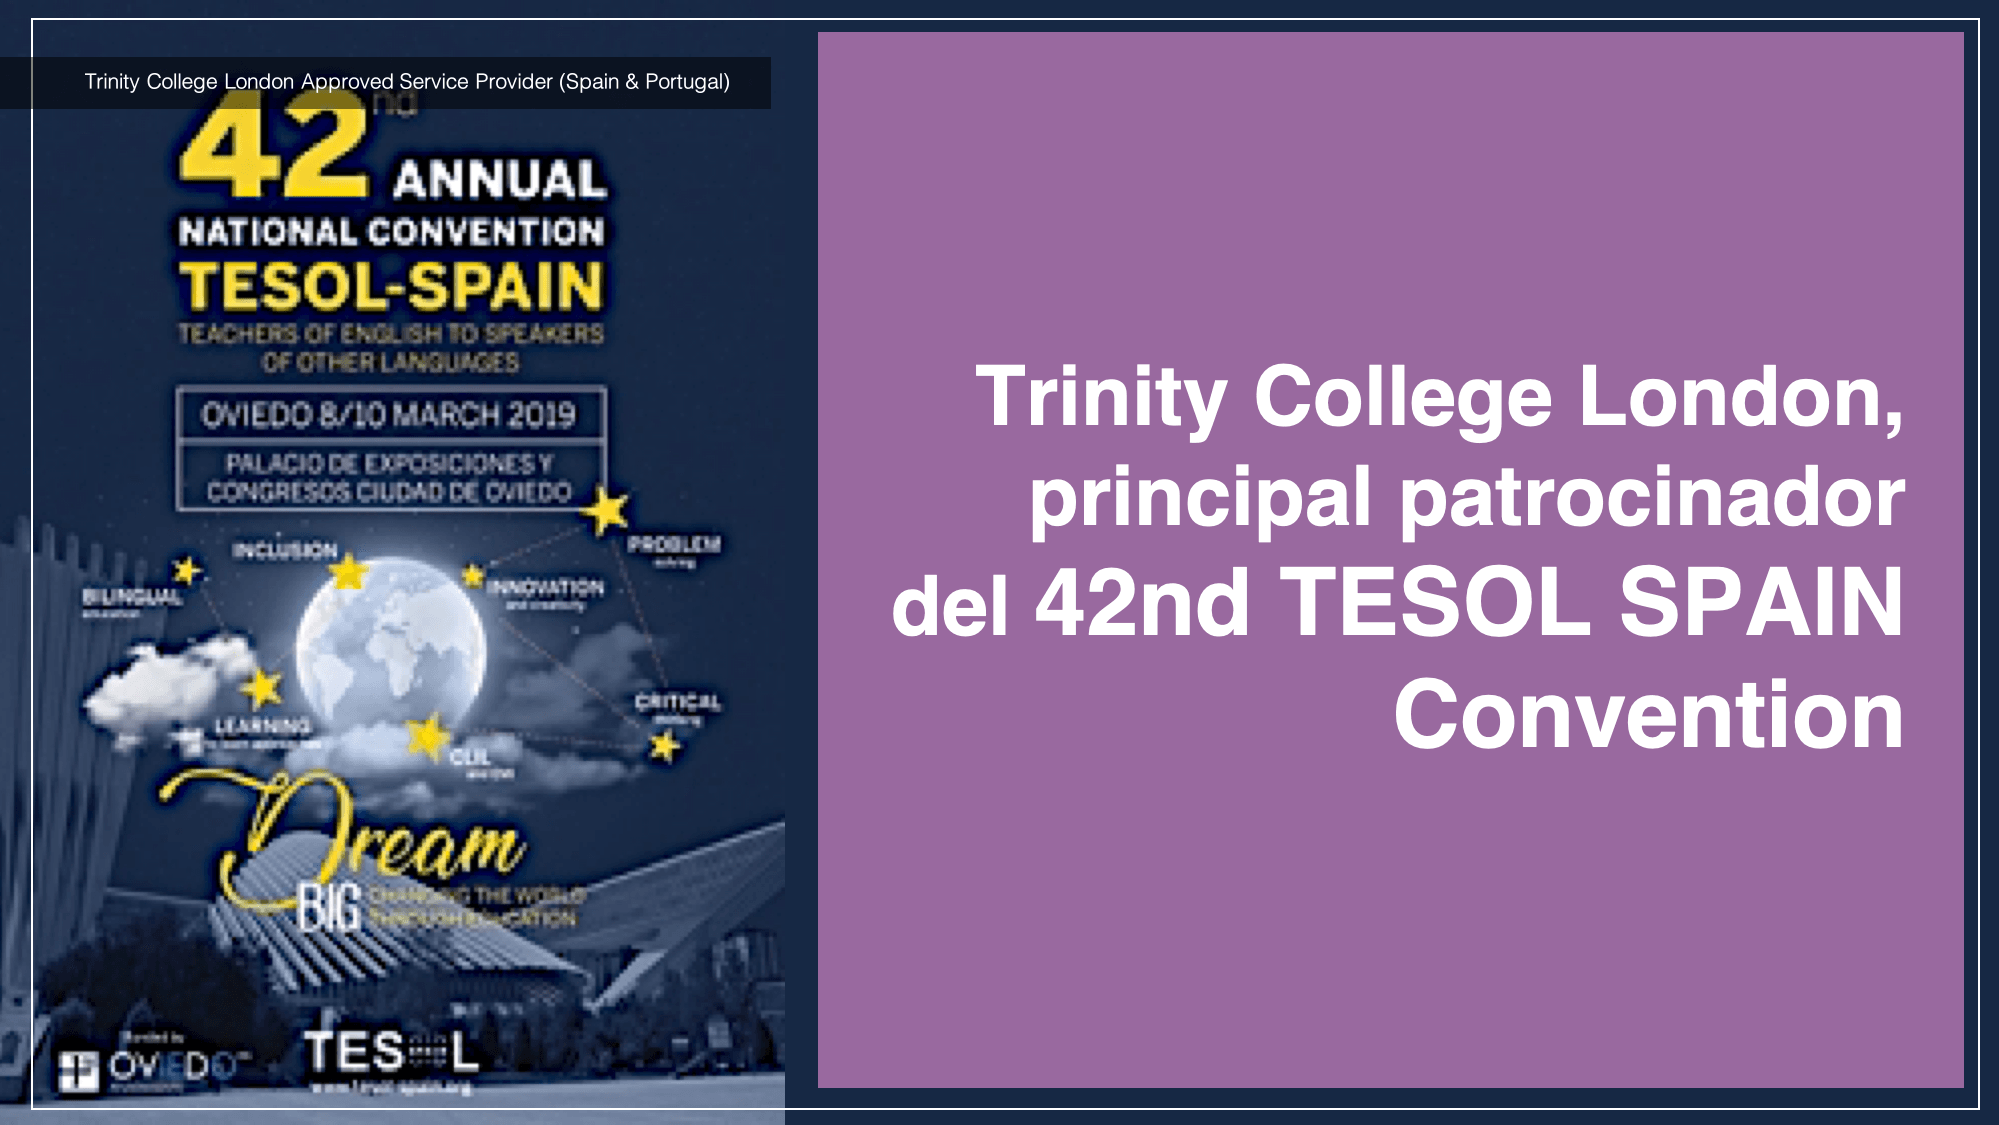 Trinity College London, principal patrocinador del 42nd TESOL SPAIN Convention